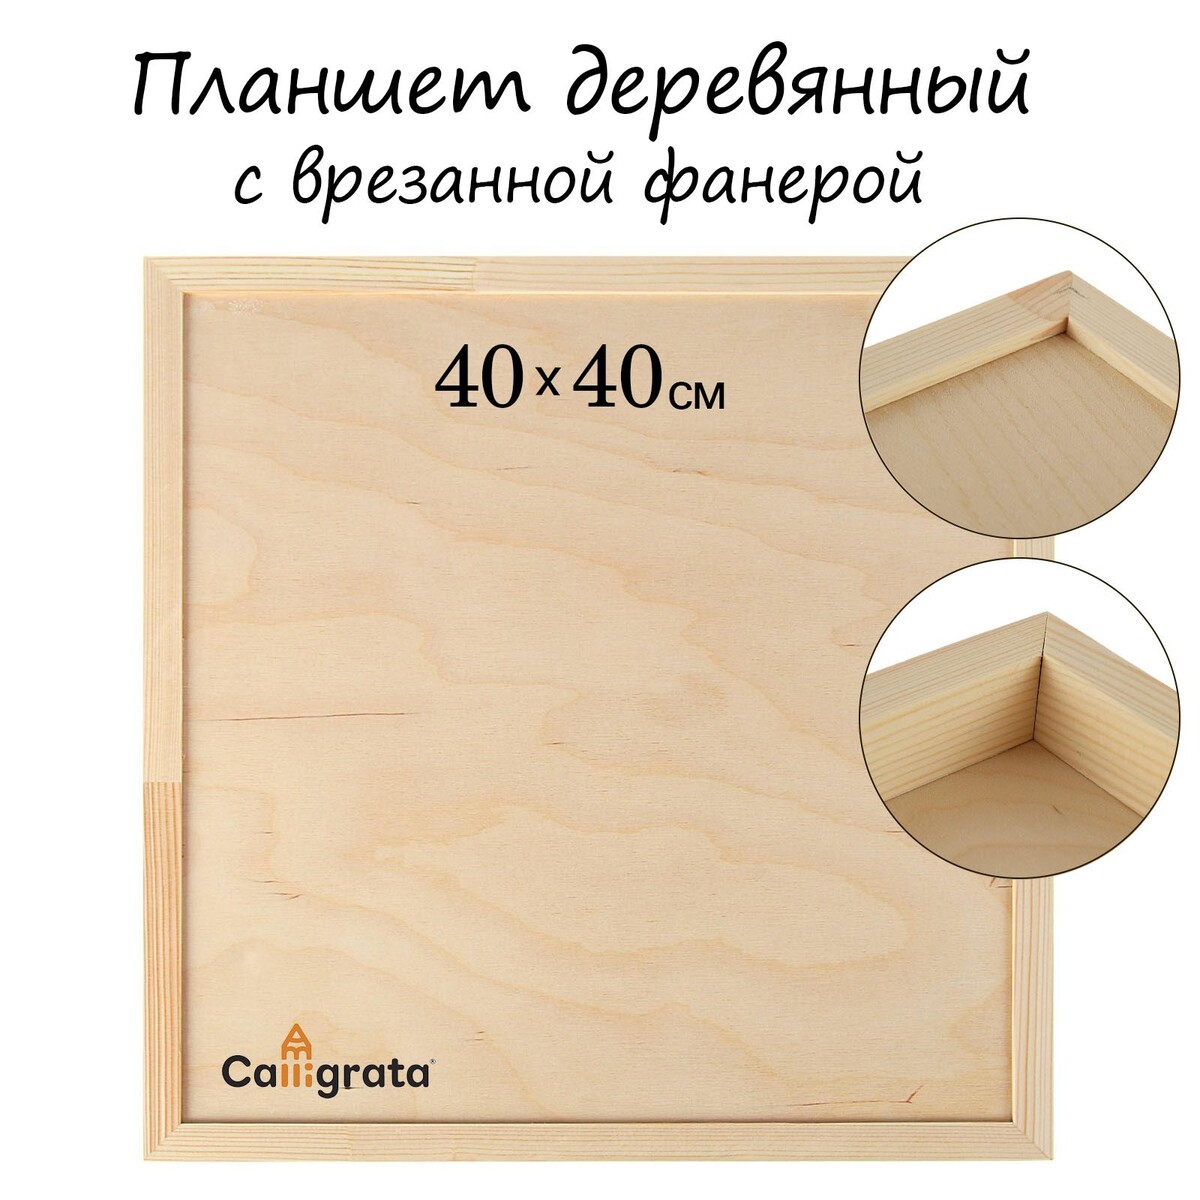 Планшет деревянный, с врезанной фанерой, 40 х 40 х 3,5 см, глубина 0.5 см, сосна планшет деревянный с врезанной фанерой 50 х 50 х 3 5 см глубина 0 5 см сосна